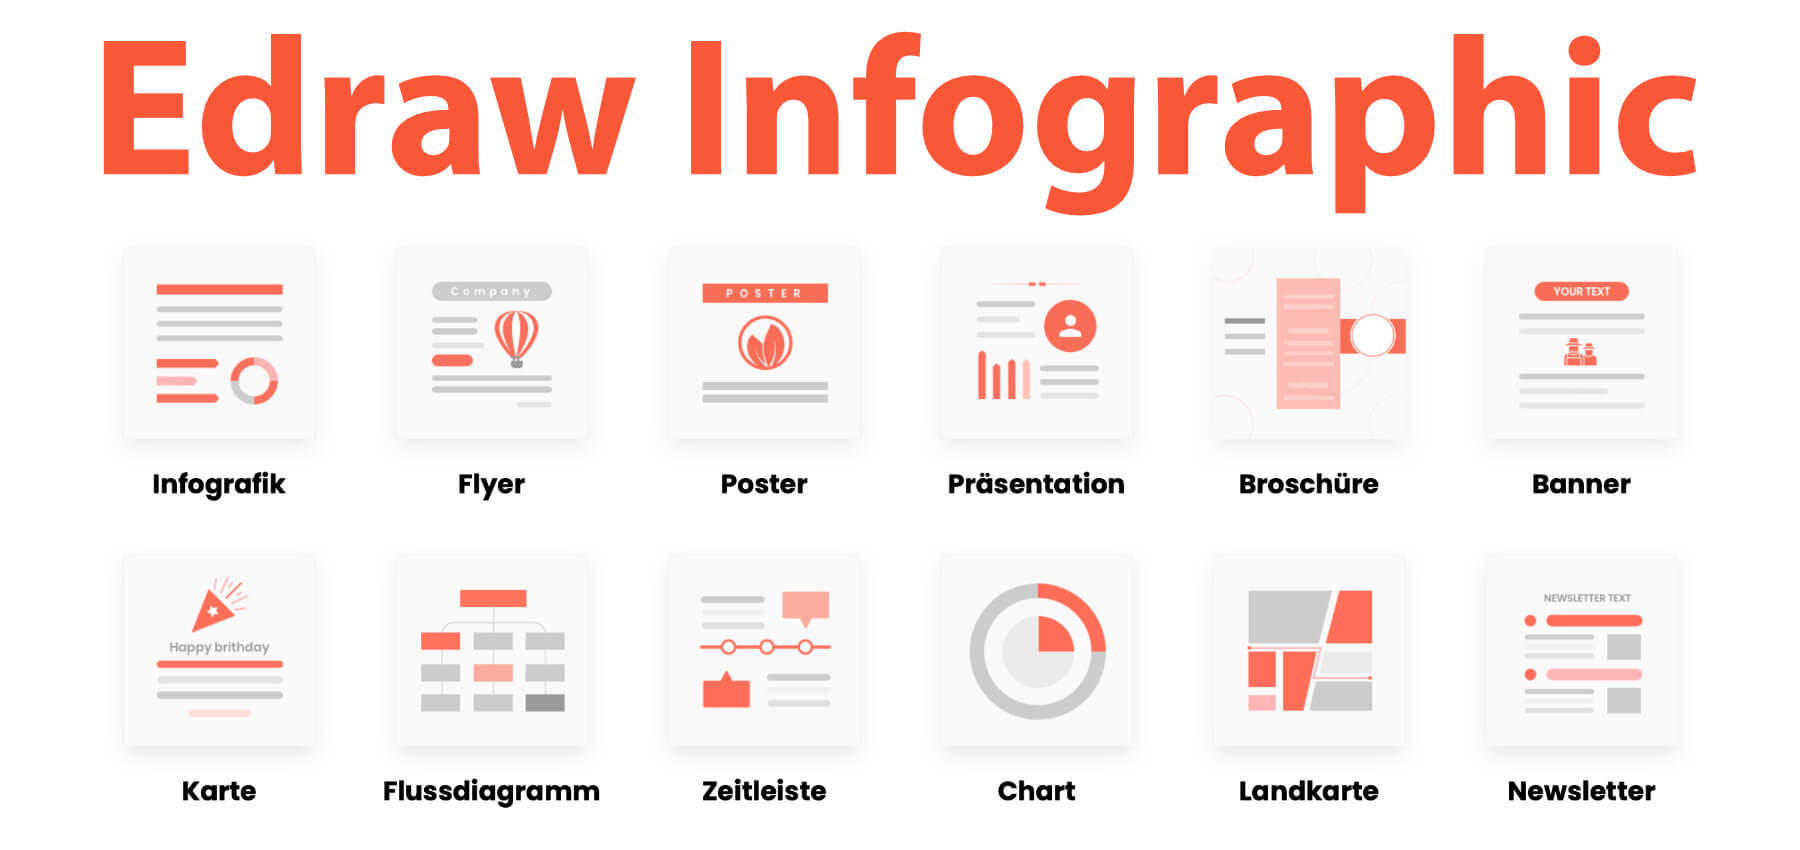 Edraw Infographic Mac Tool Zum Erstellen Von Infografiken Sir Apfelot